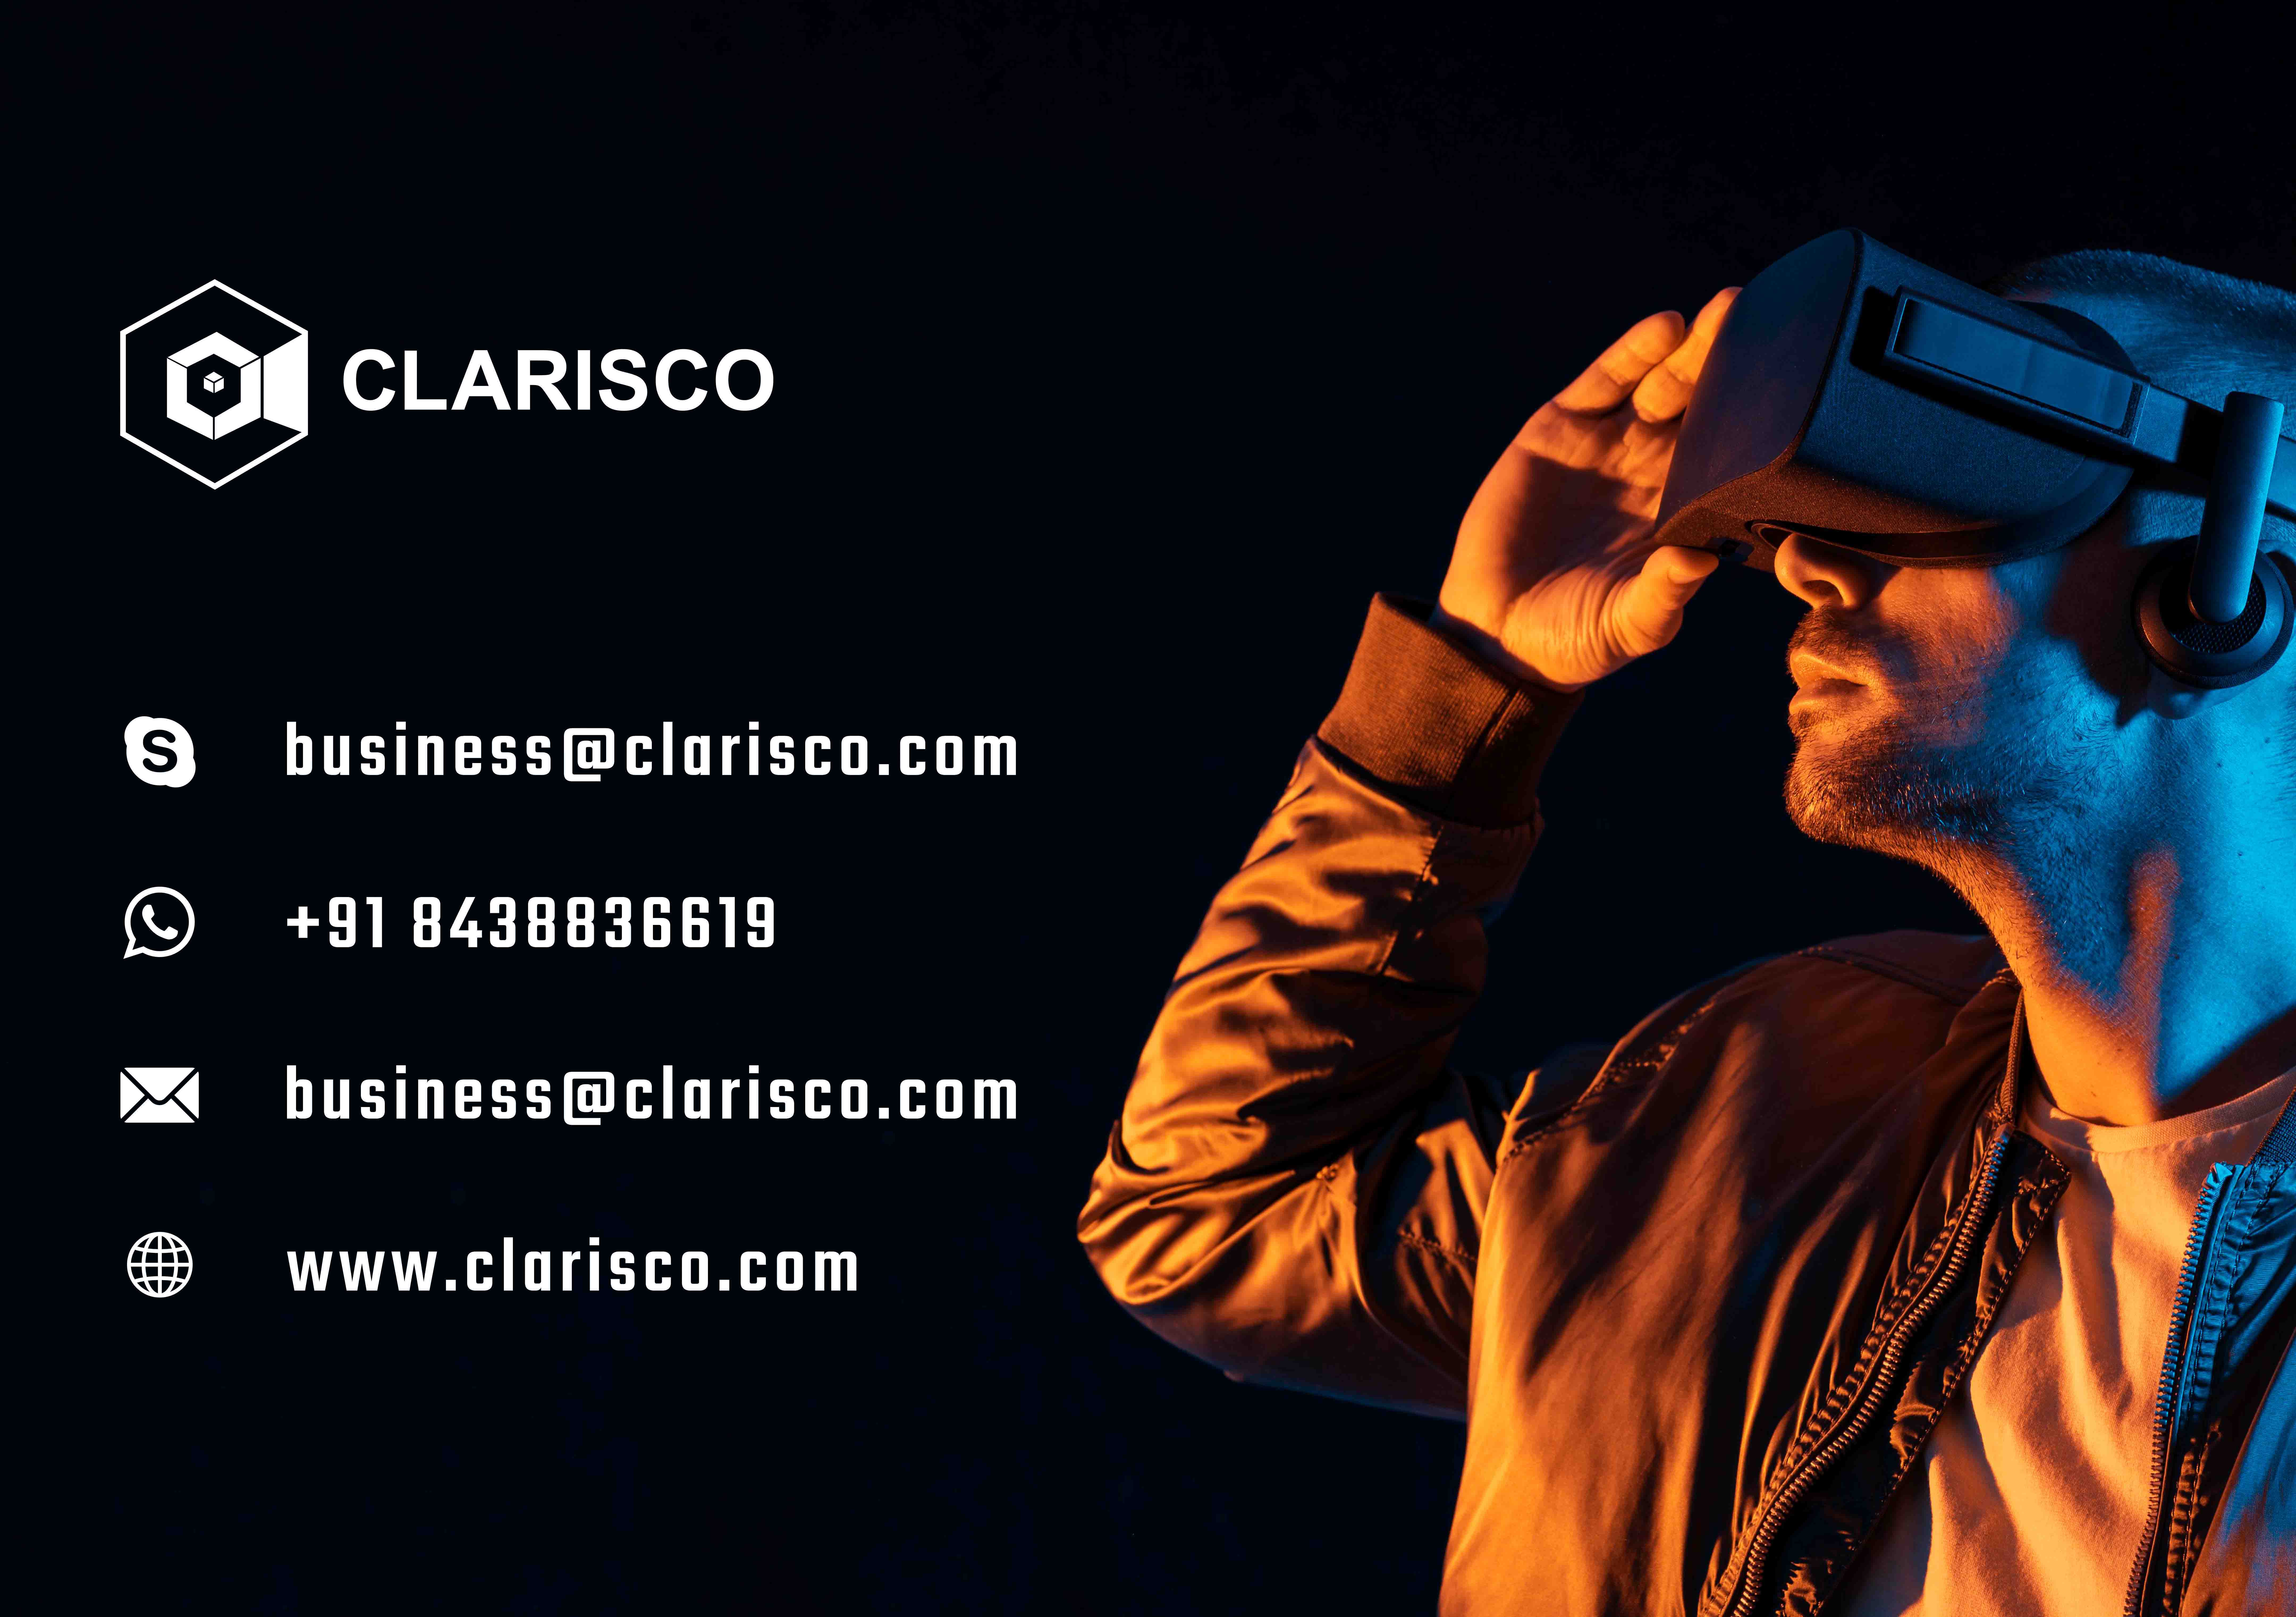 www.clarisco.com